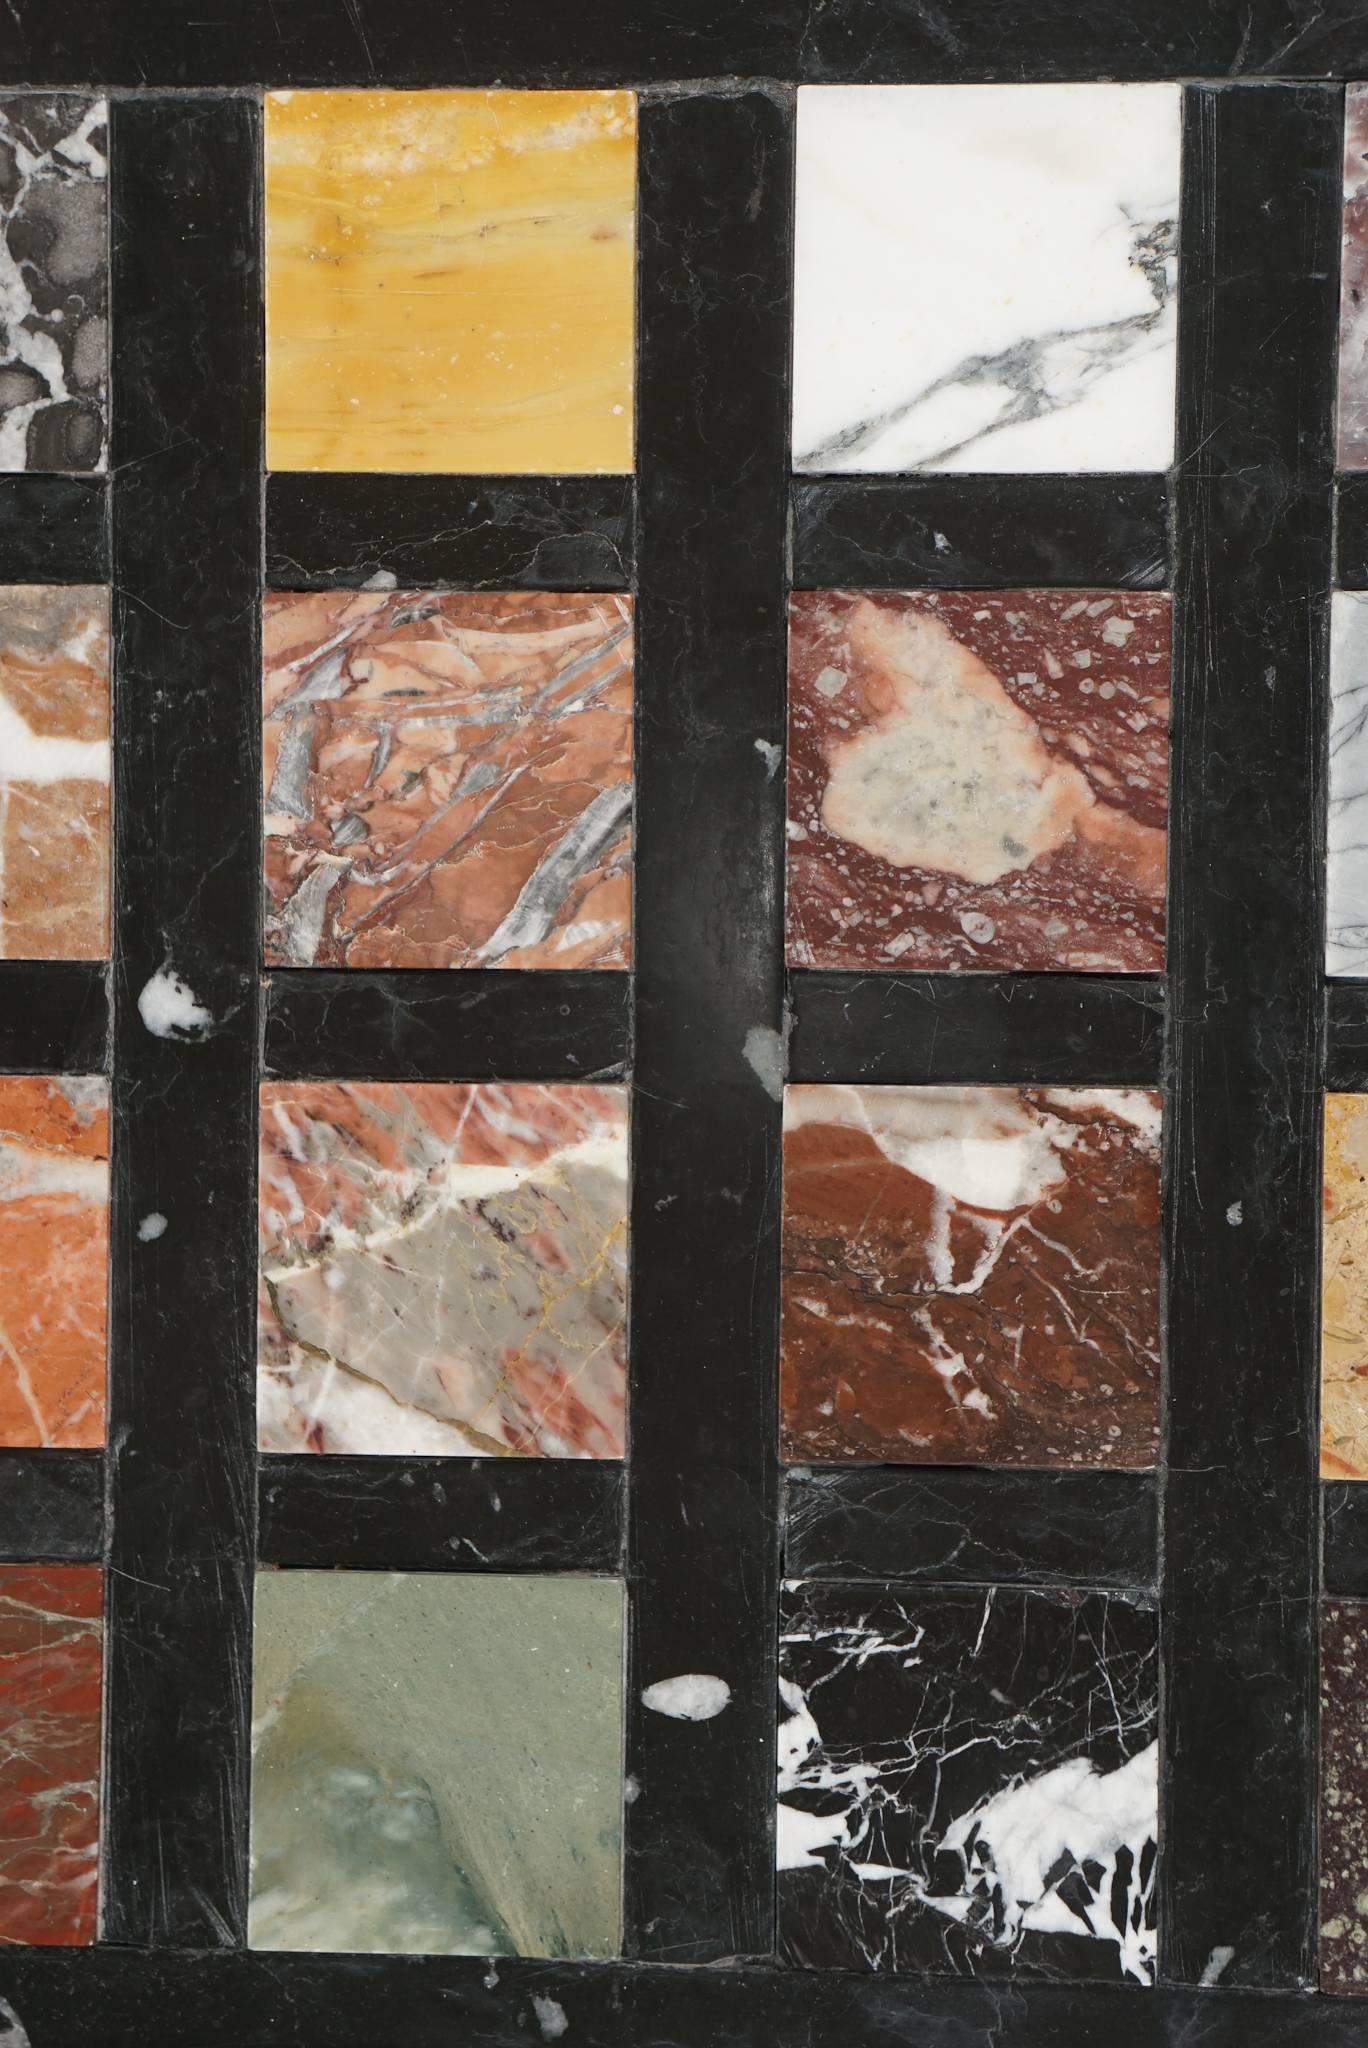 Plaque de spécimen de marbre du Grand Tour d'Italie dans son cadre d'origine en bois doré et argenté, composée de 20 marbres rares et anciens différents, dont le Porphyre et le Jaspe, incrustés dans une grille géométrique en onyx noir et blanc.